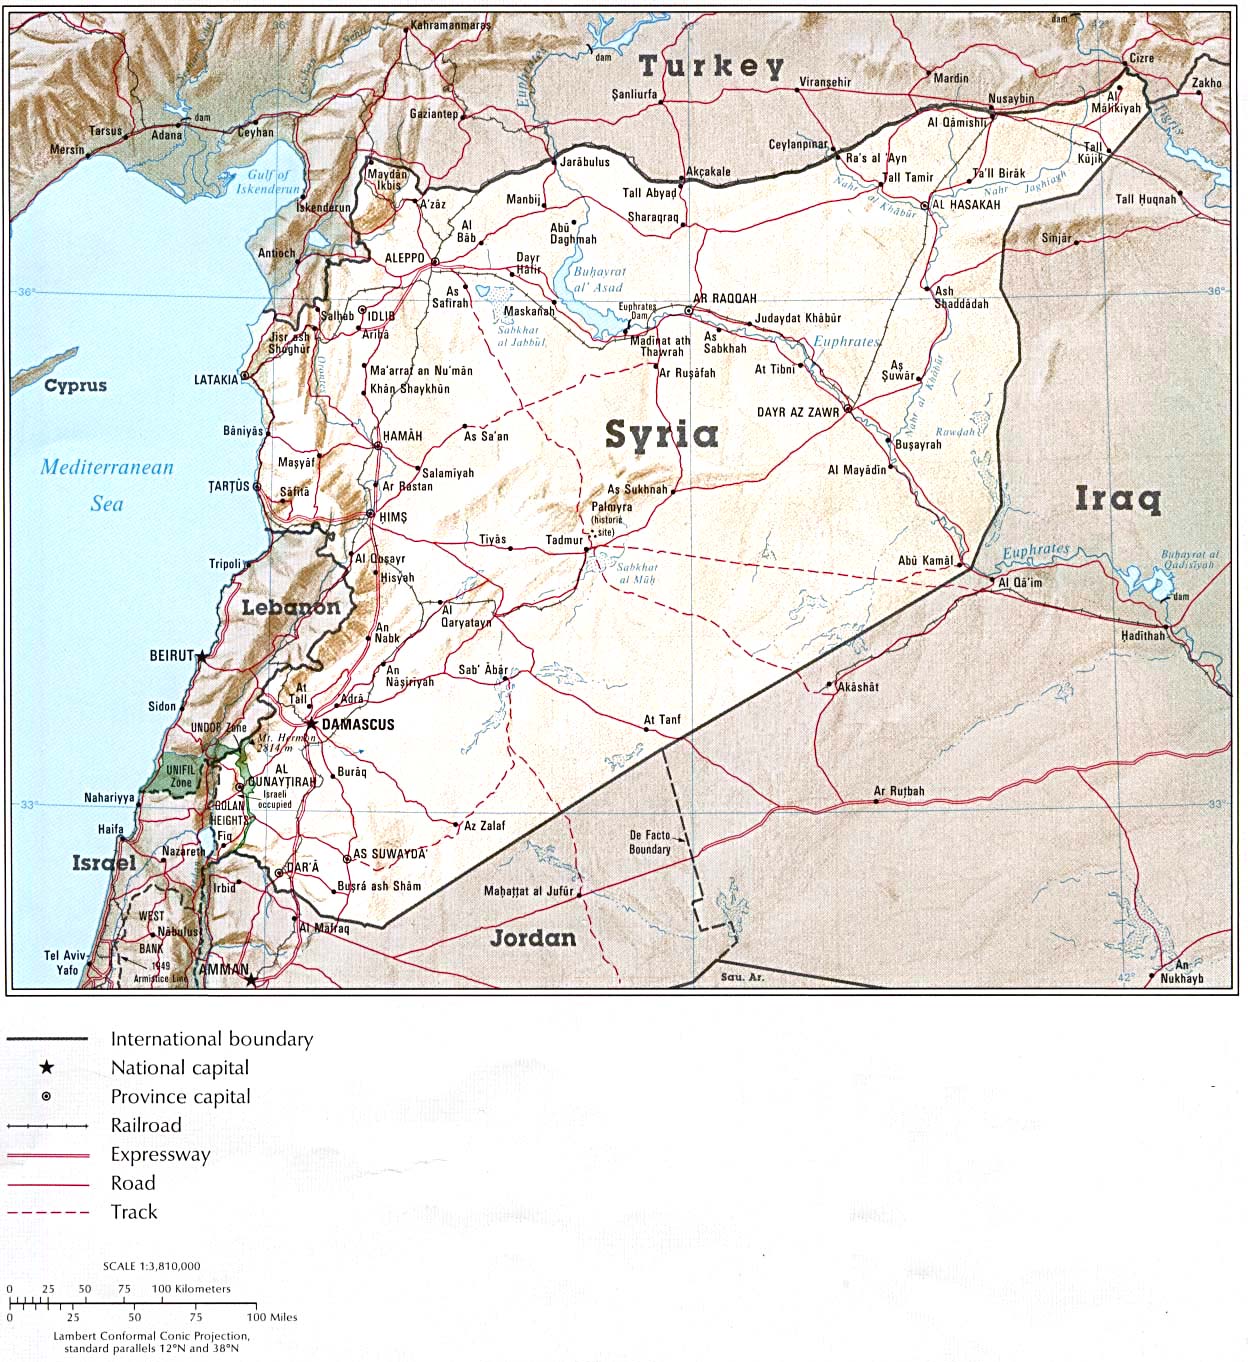 Mapa de Relieve Sombreado de Syria